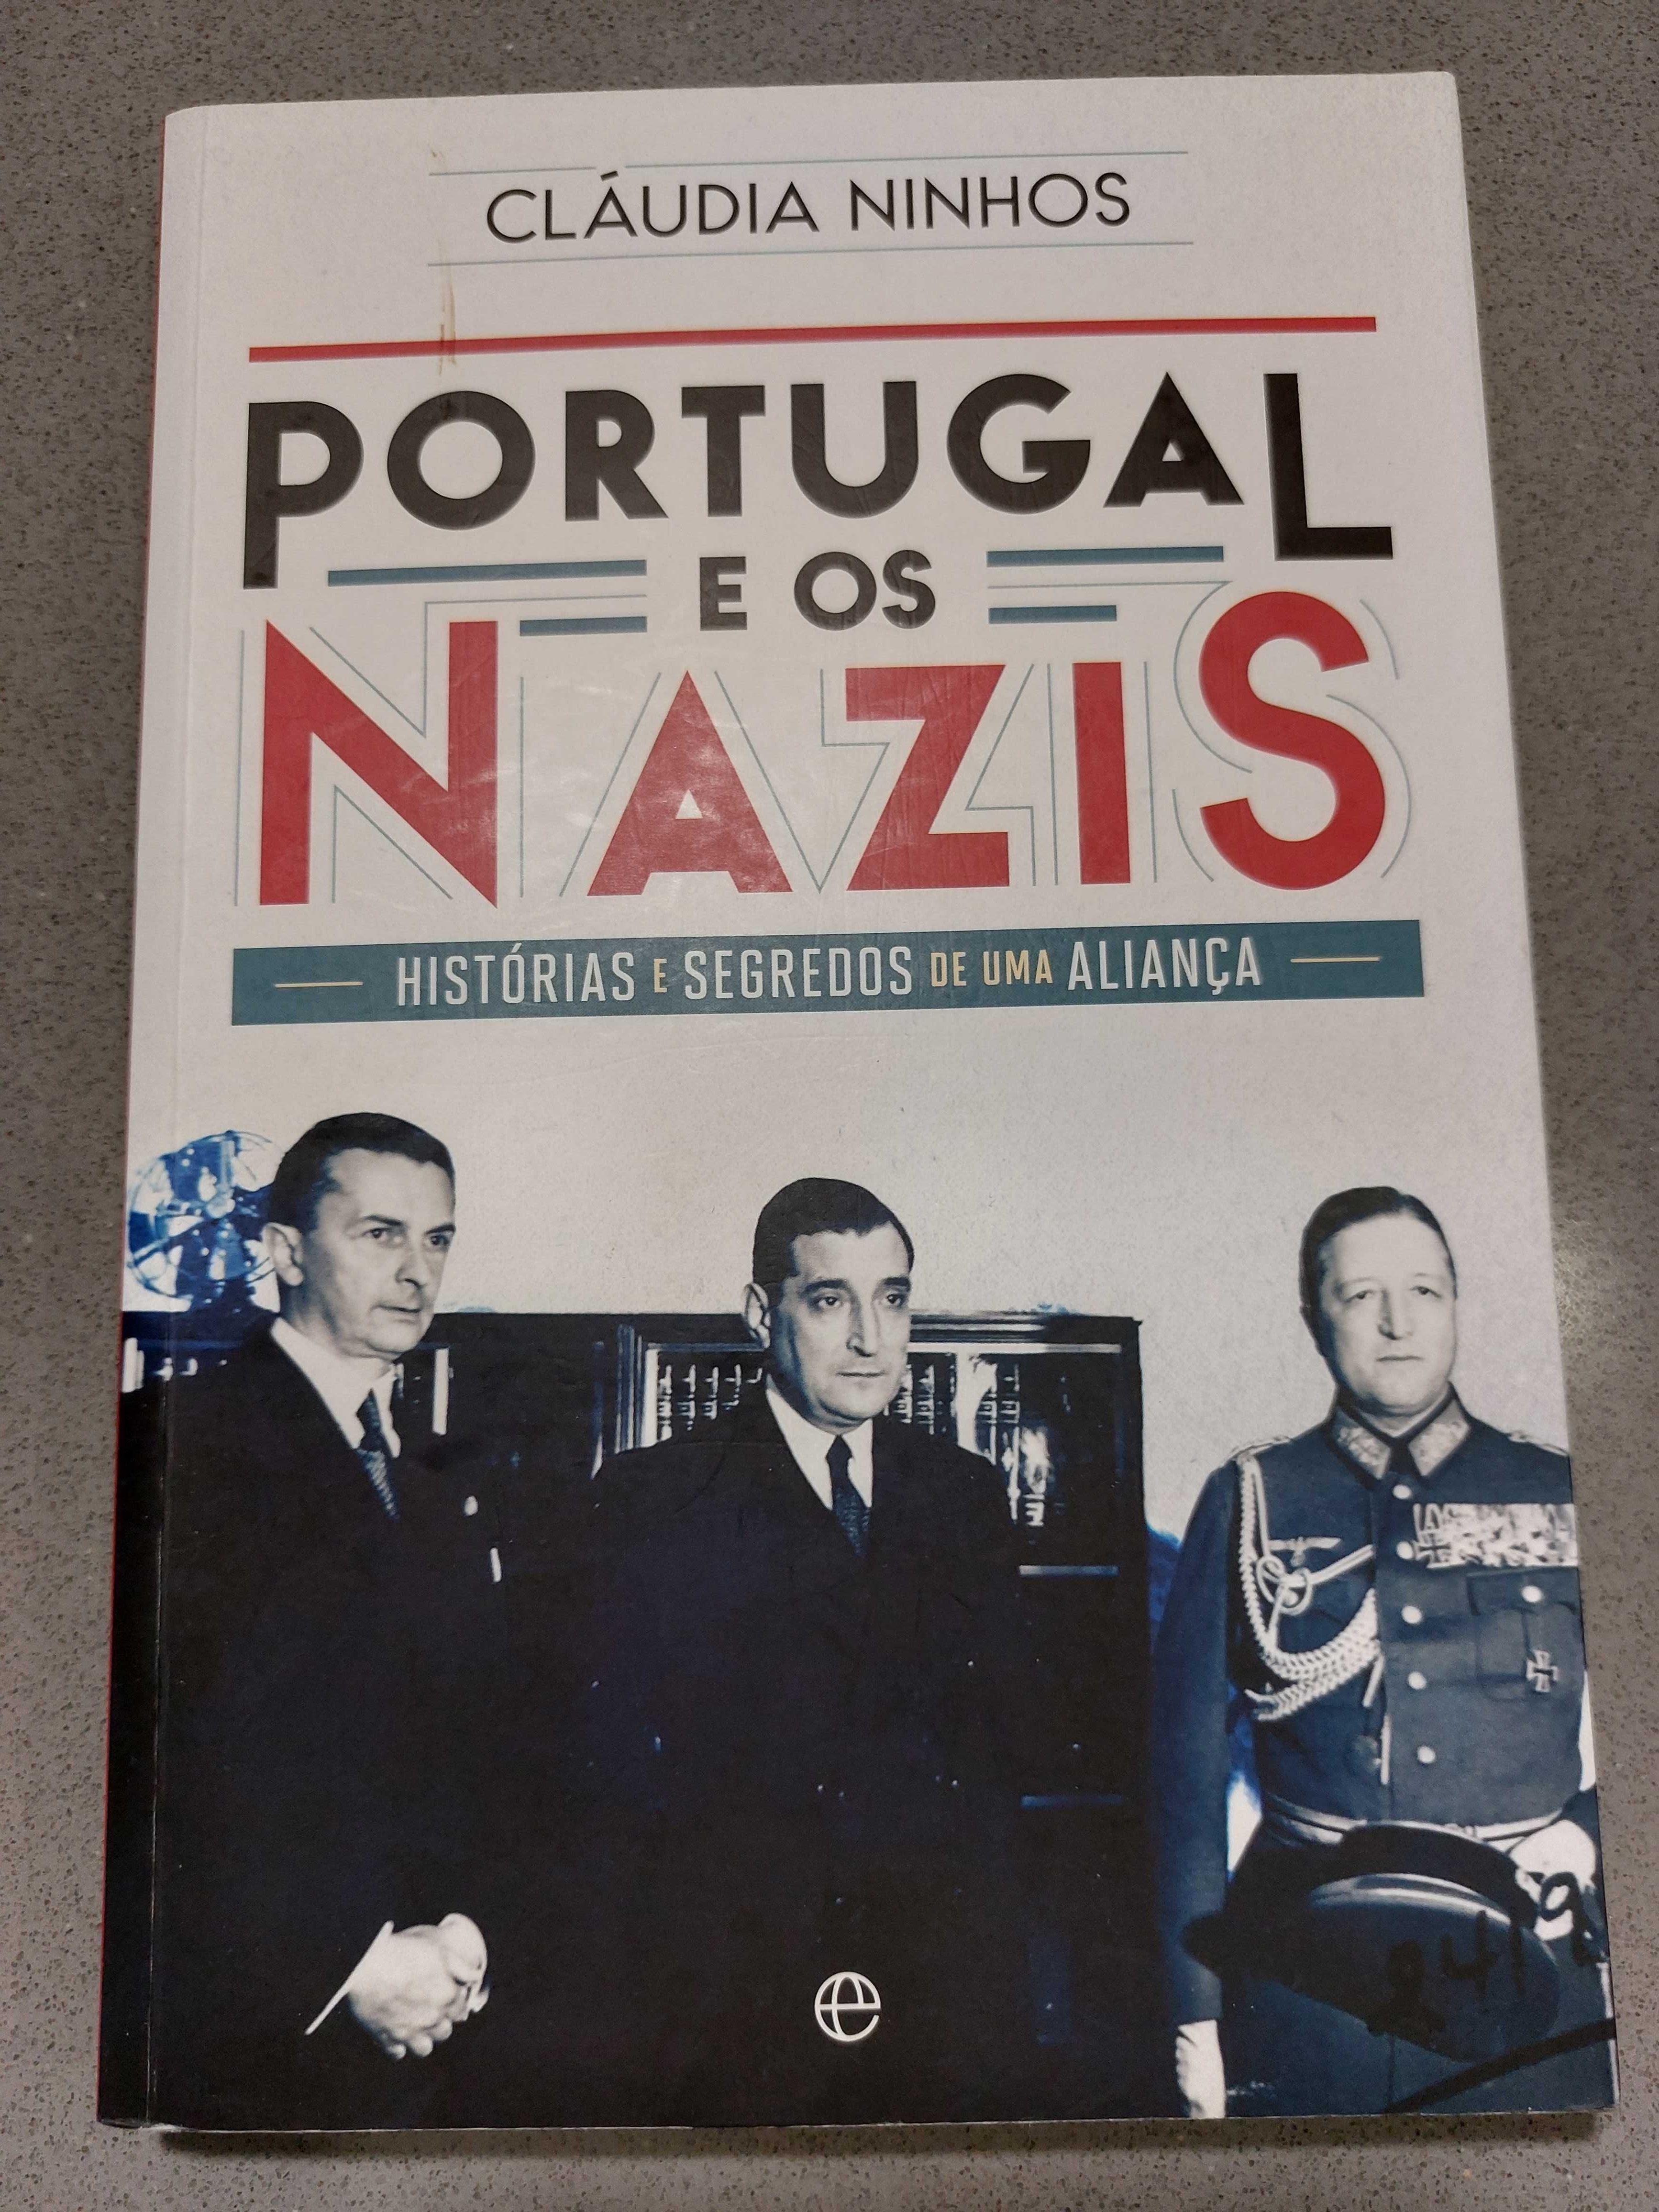 Cláudia Ninhos - Portugal e os Nazis (PORTES GRATIS)